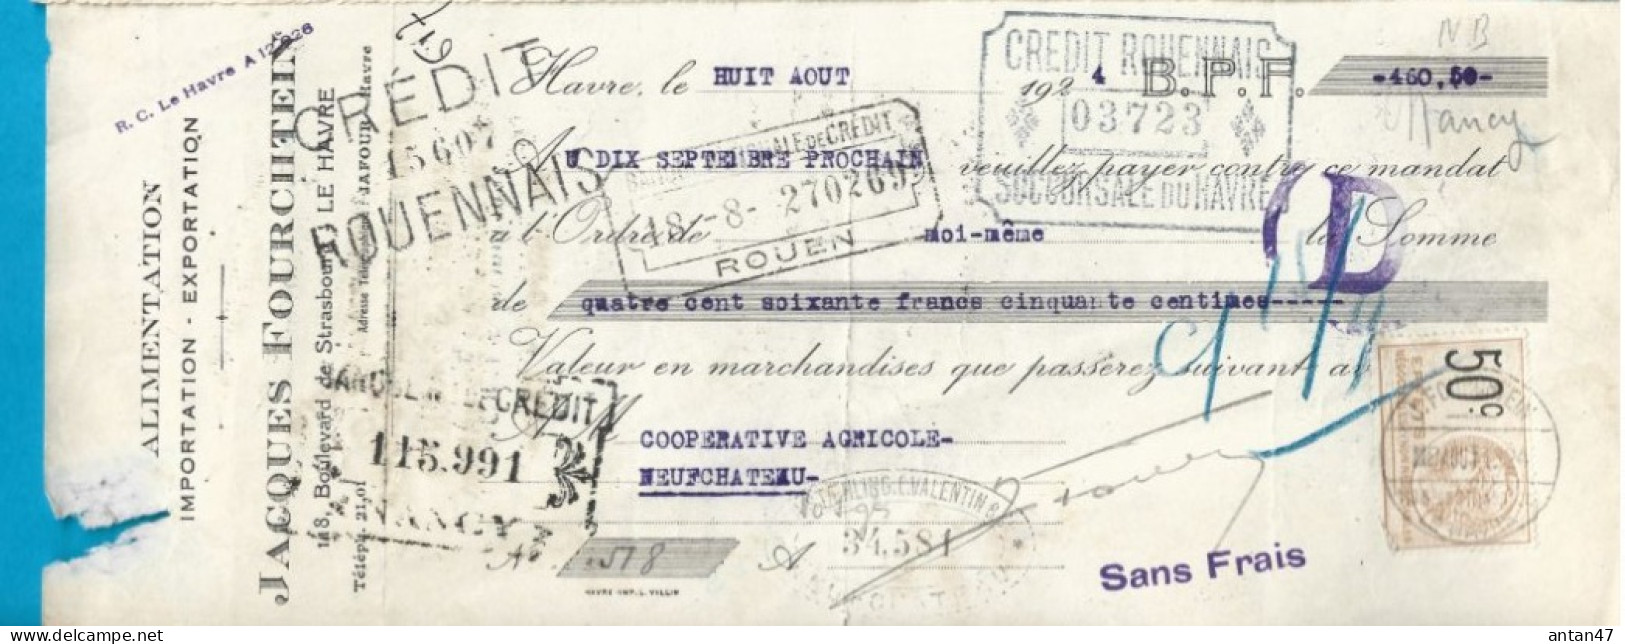 Traite 1924 / 76 LE HAVRE / Importation Exportation Alimentation FOURCHTEIN - Lettres De Change